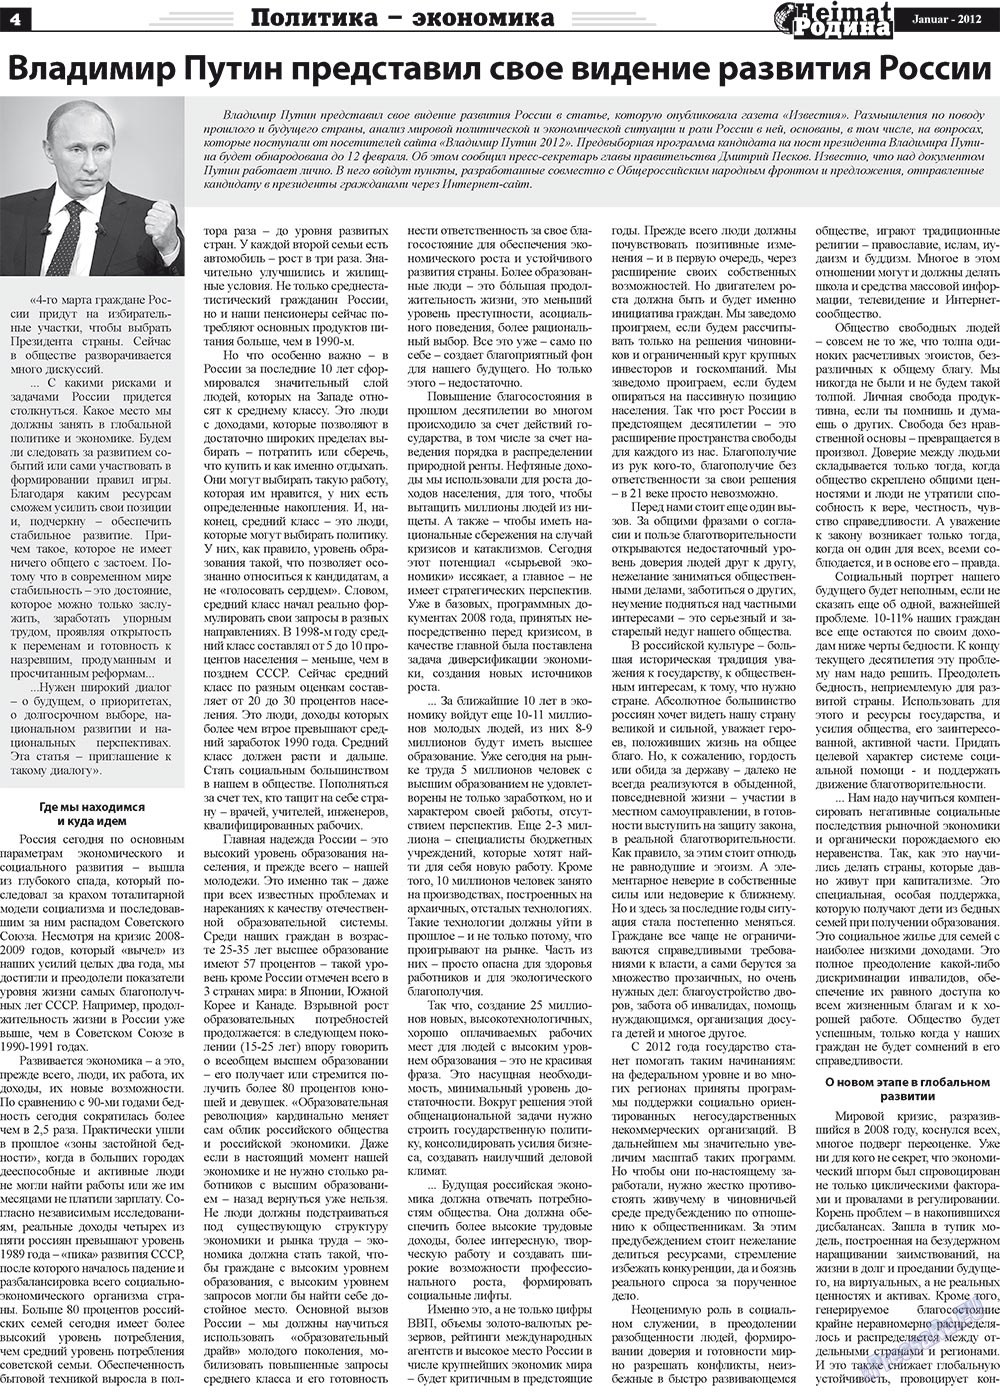 Heimat-Родина (газета). 2012 год, номер 1, стр. 4